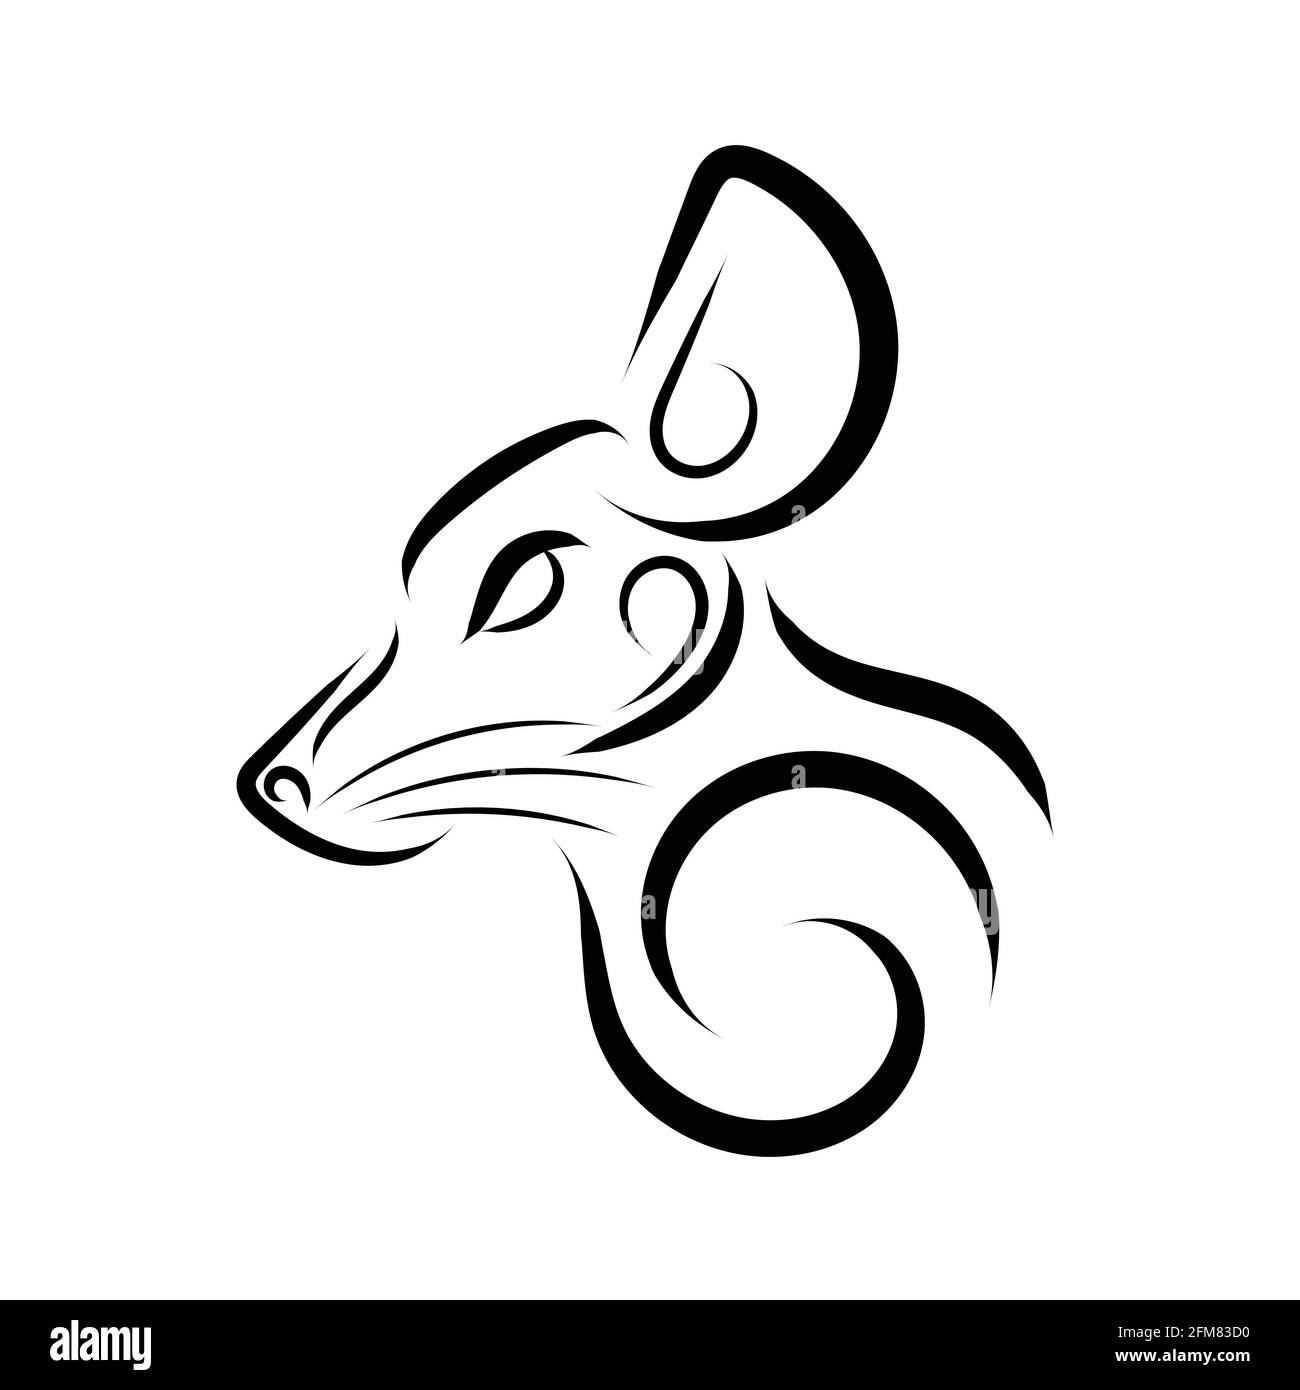 Linea in bianco e nero della testa del mouse. Buon uso per simbolo, mascotte, icona, avatar, tatuaggio, T Shirt design, logo o qualsiasi design che si desidera. Illustrazione Vettoriale